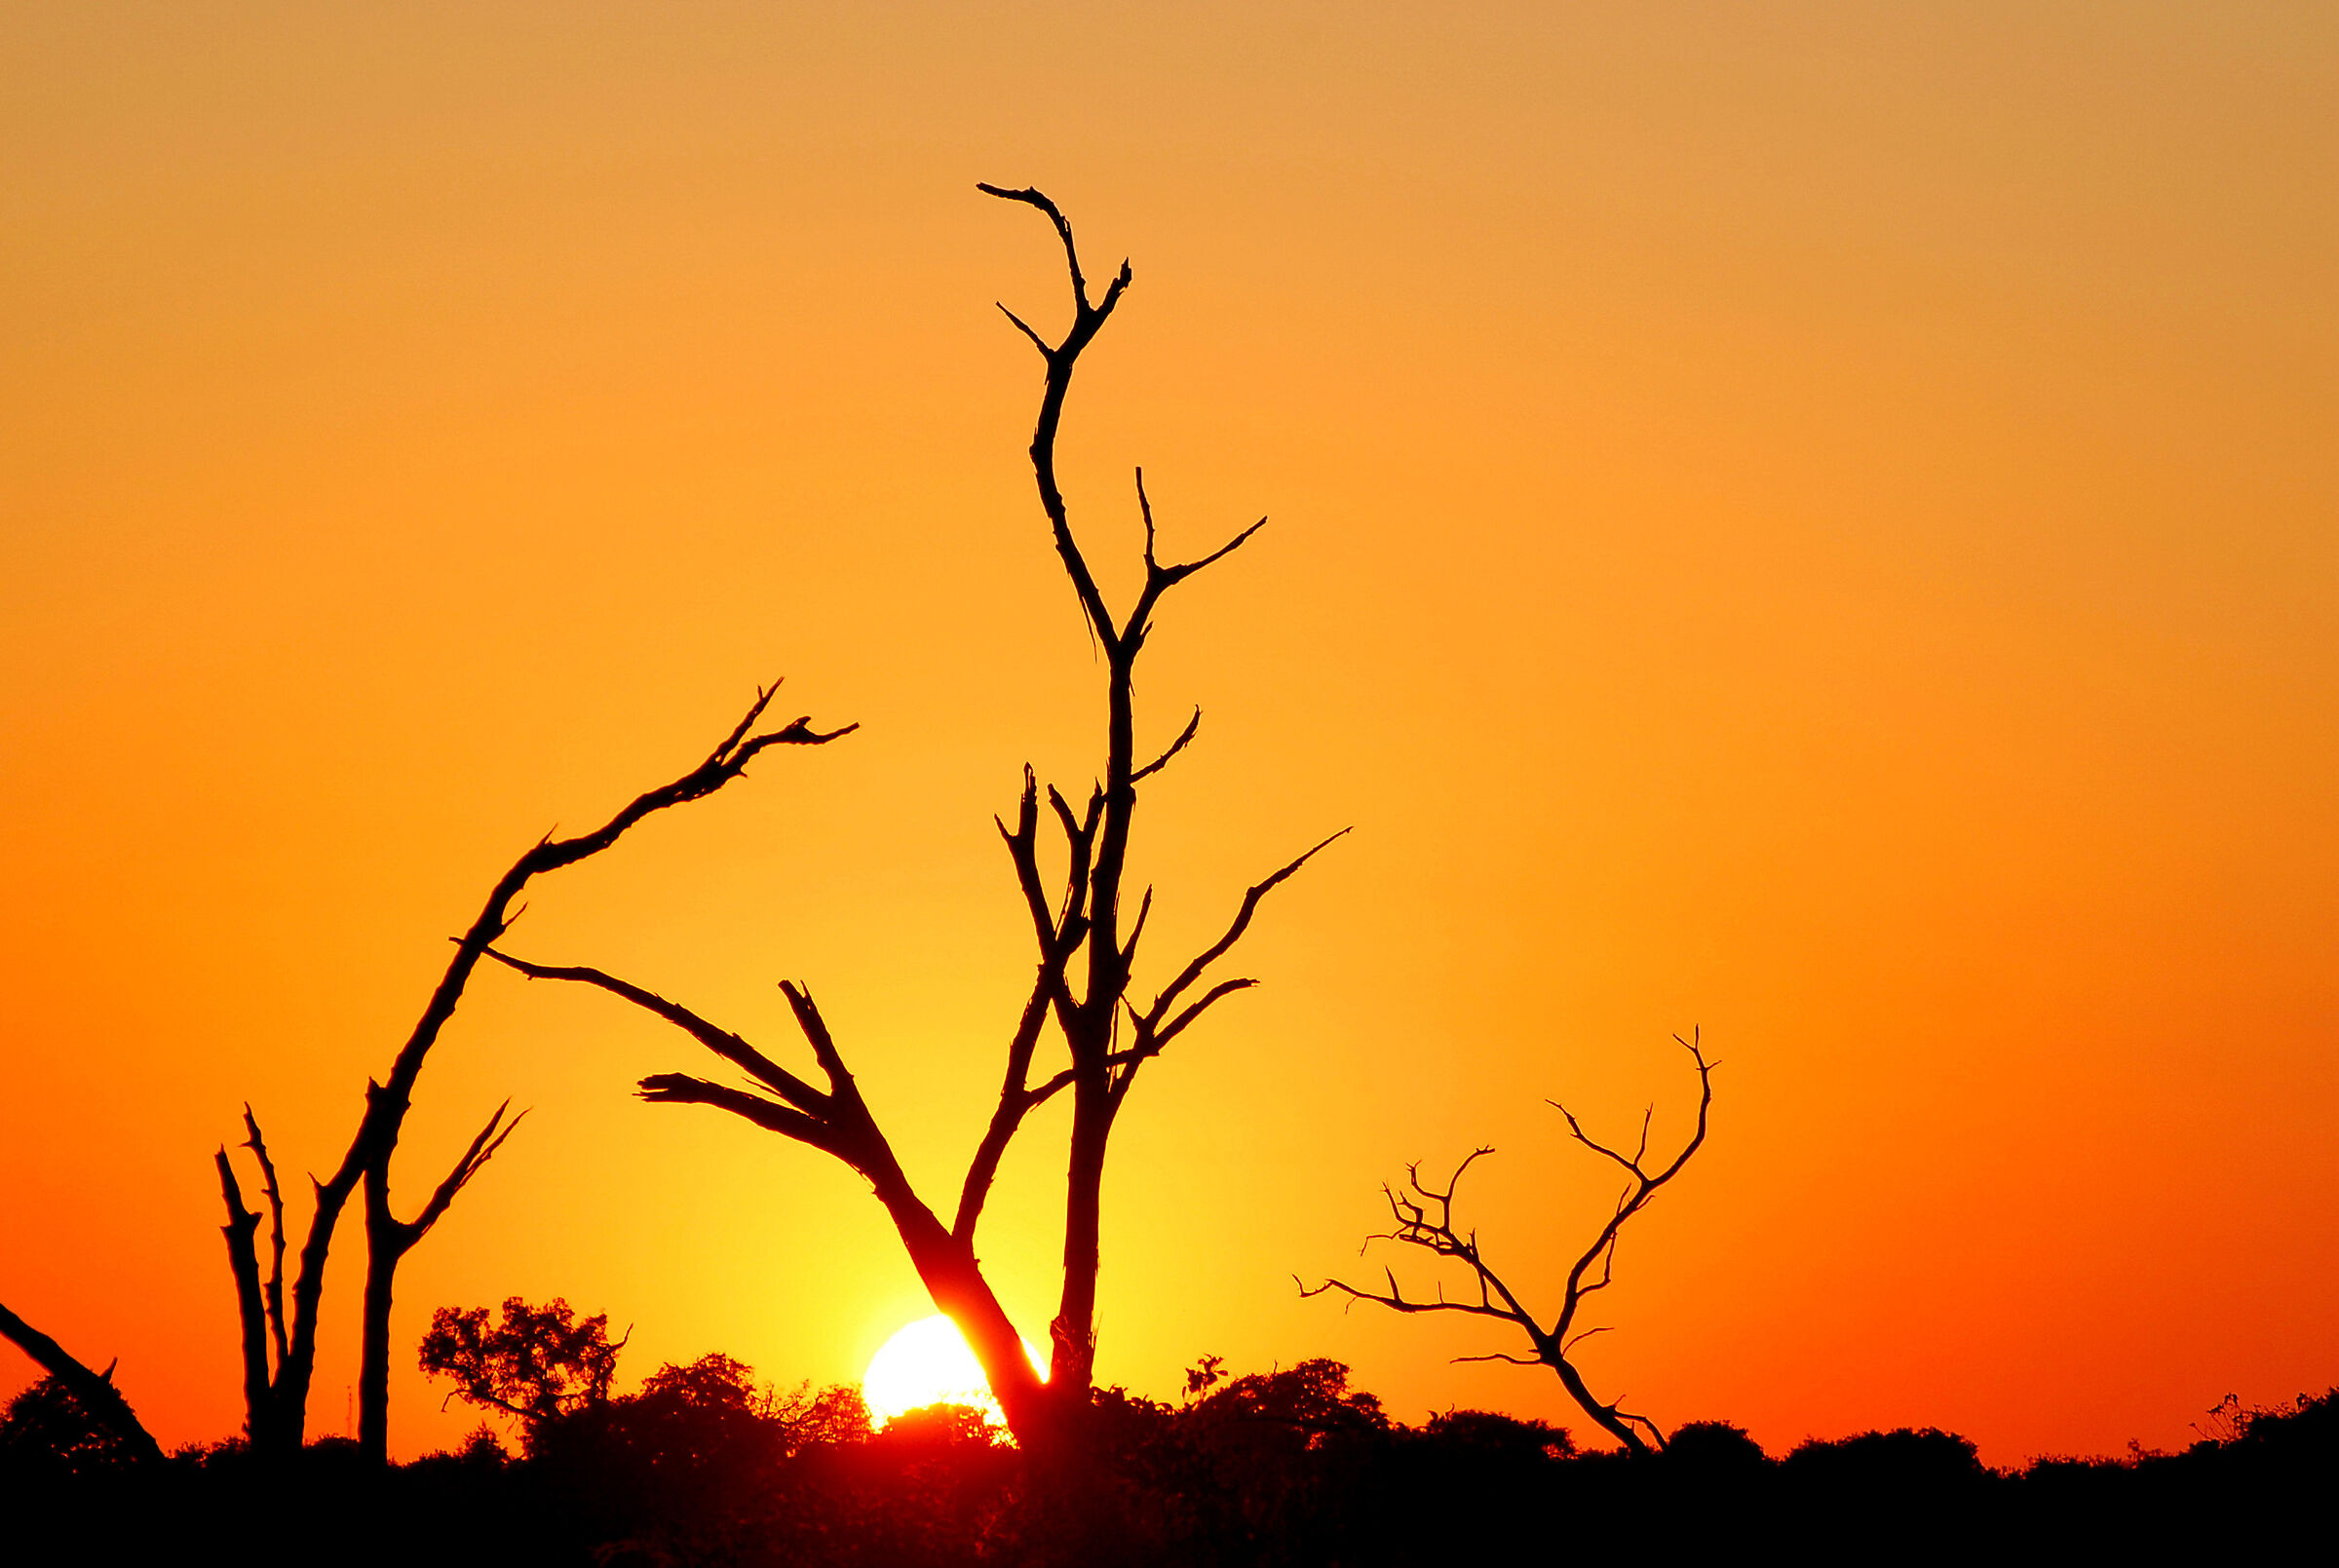 Botswana Parco Chobe: il risveglio di un nuovo giorno...